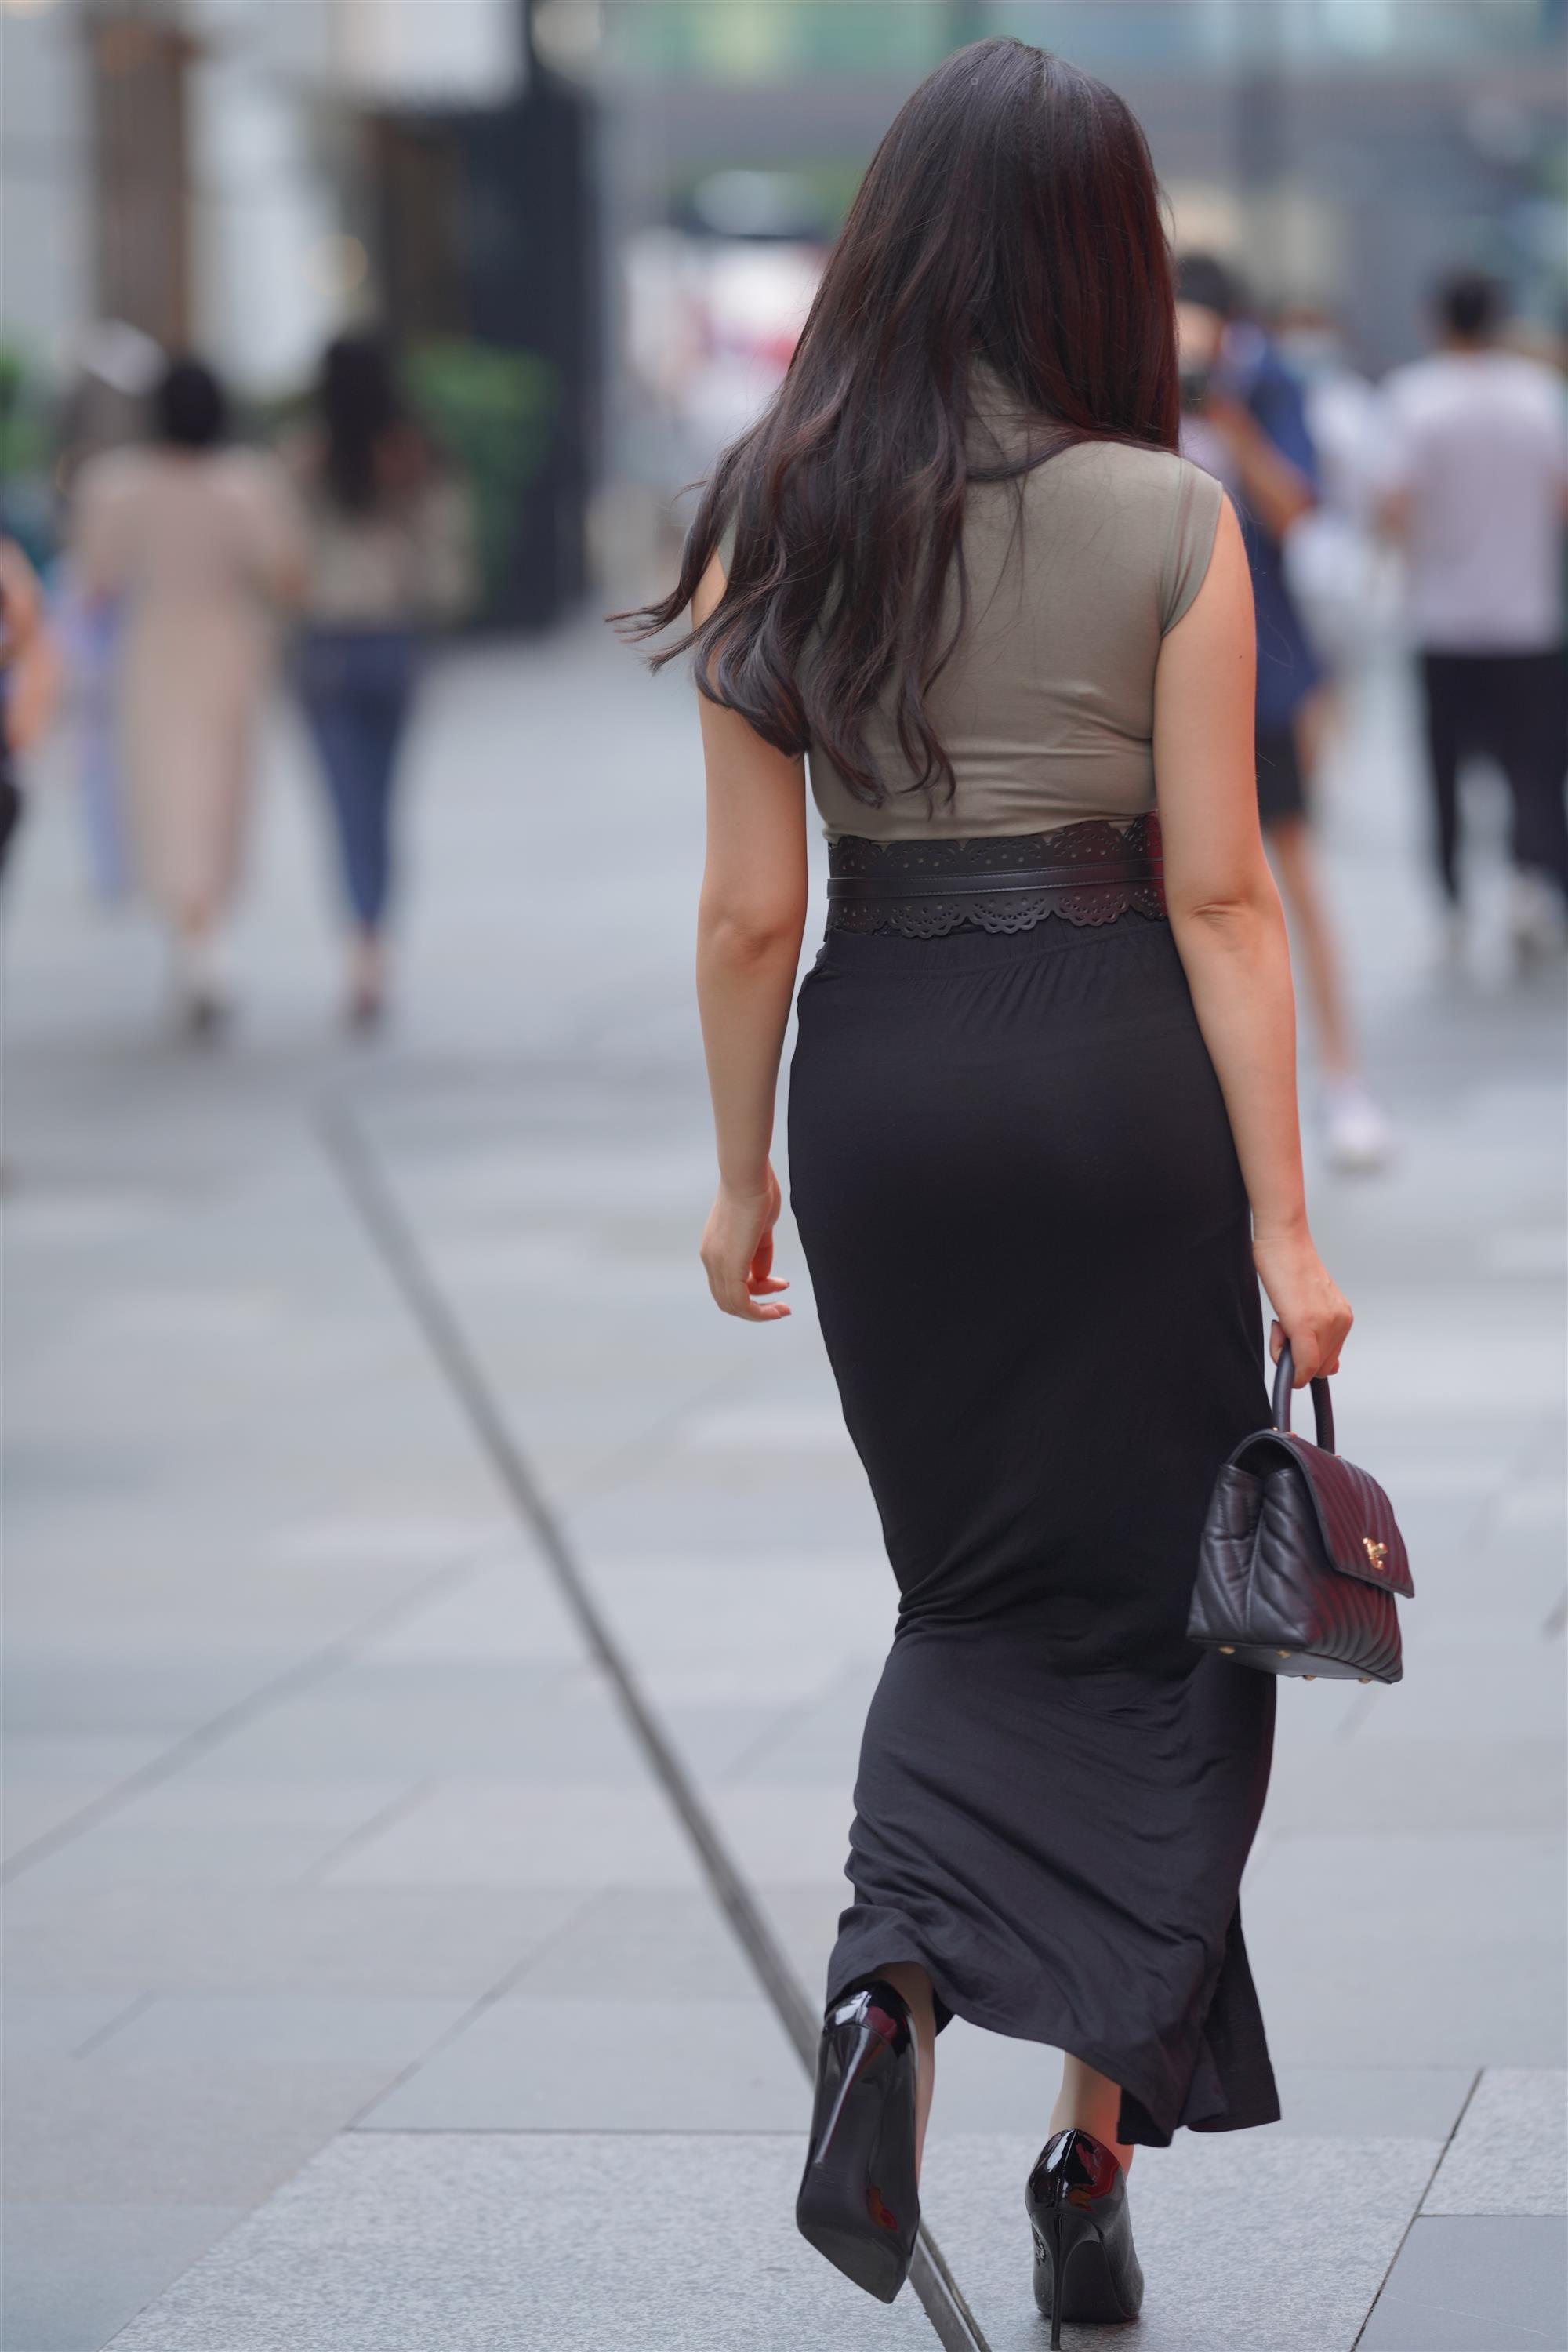 Street 欣儿 Long black skirt - 63.jpg